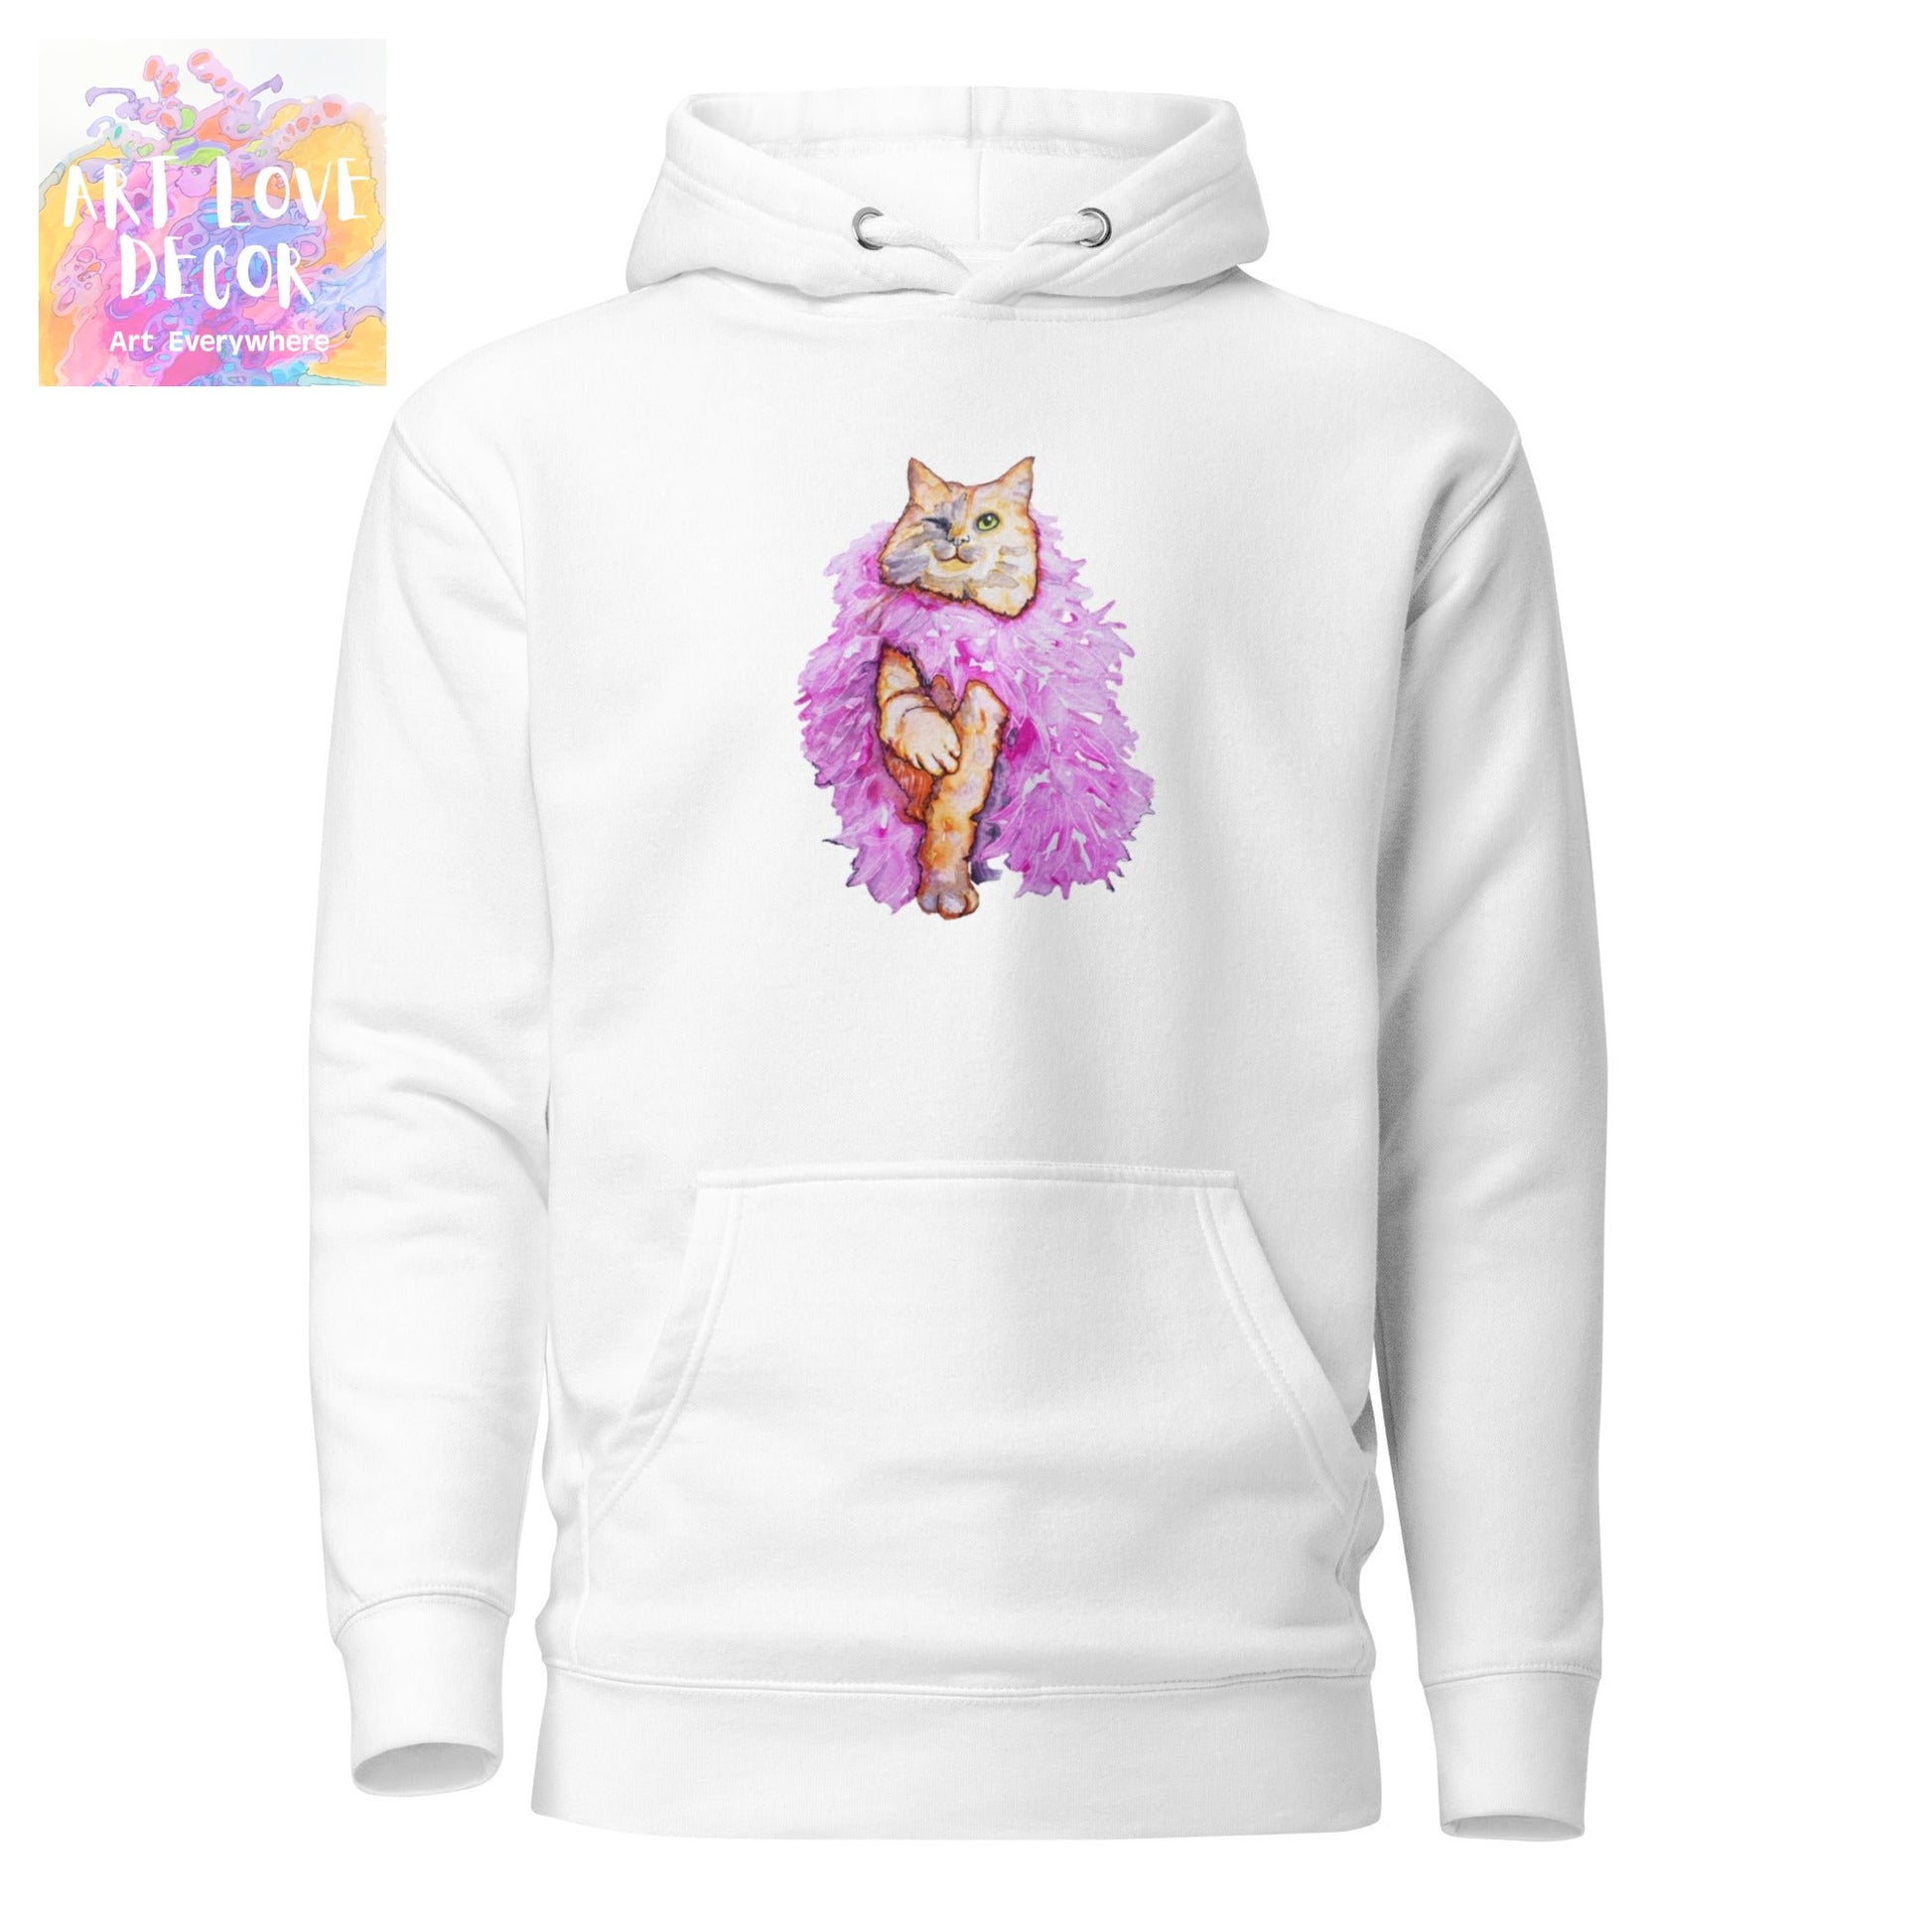 Boa Wink Kitty Women's Sweatshirt - Art Love Decor